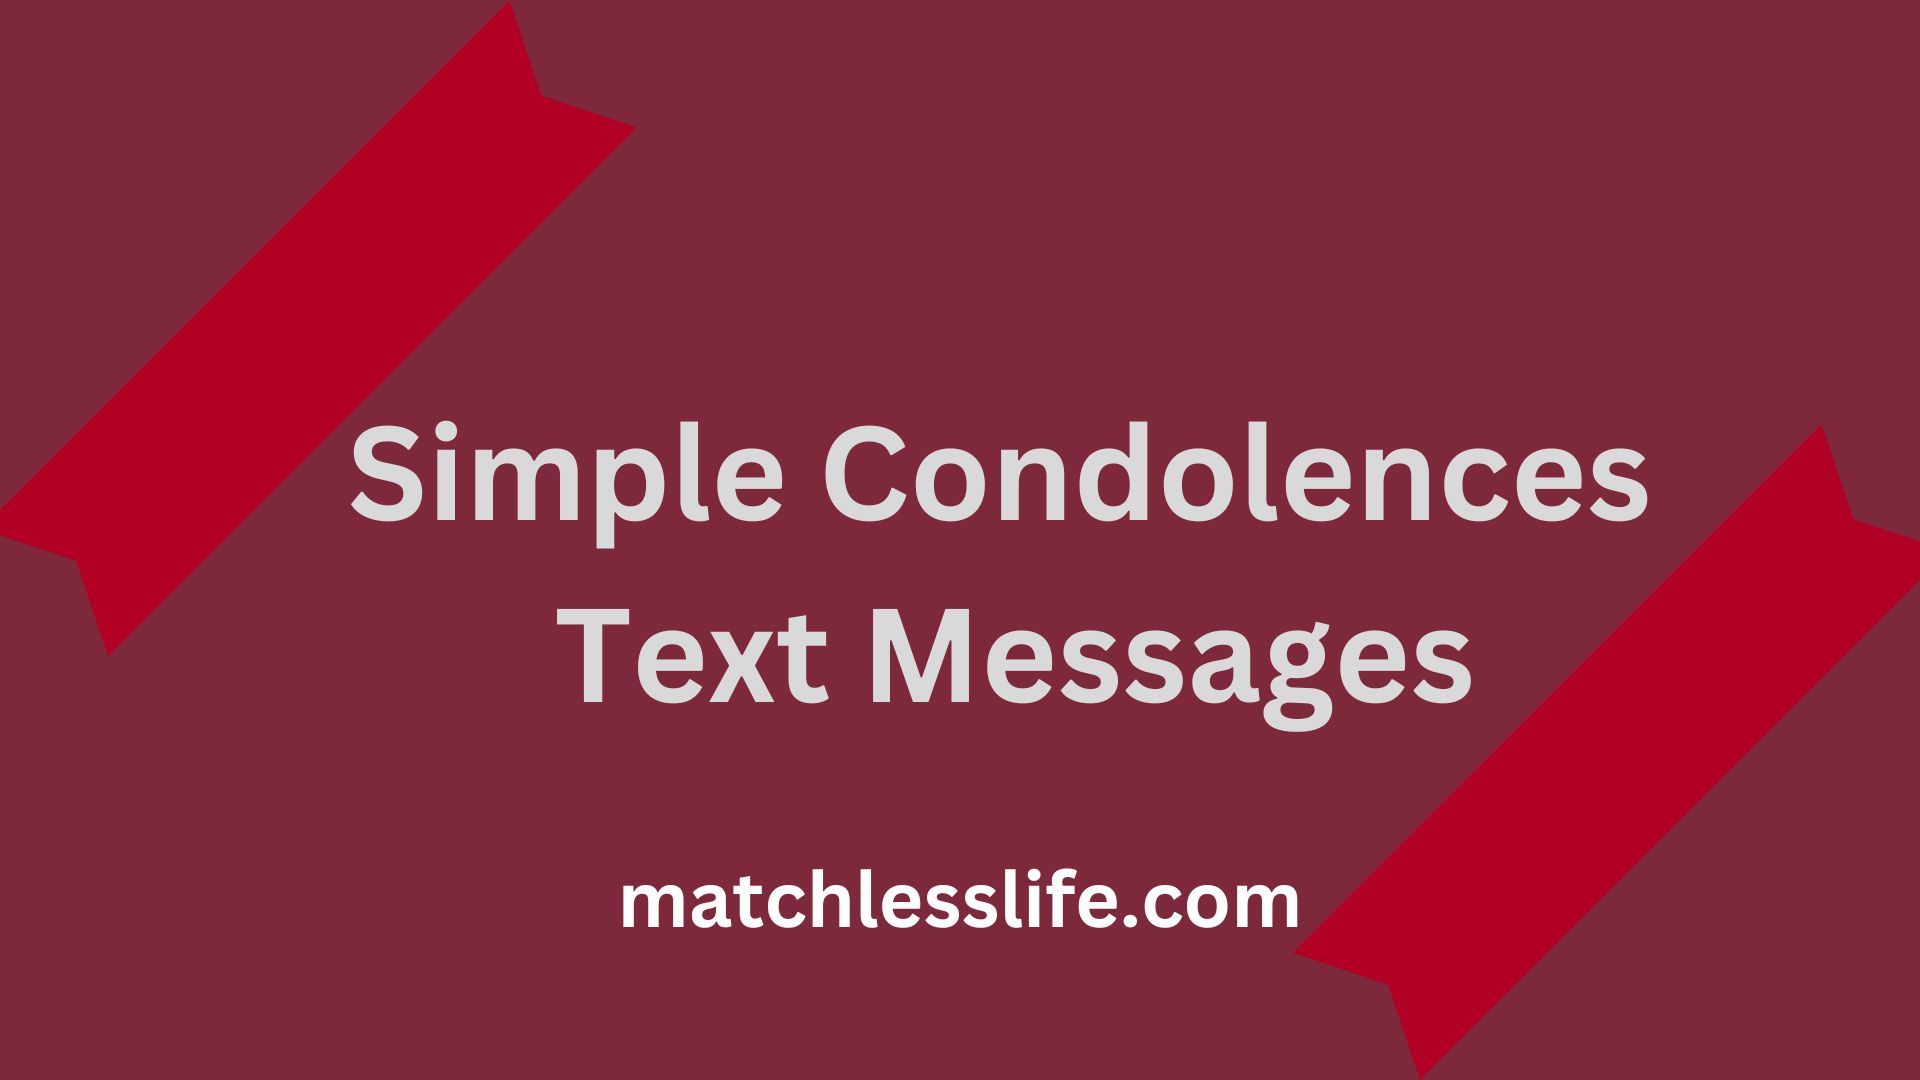 Simple Condolences Text Messages